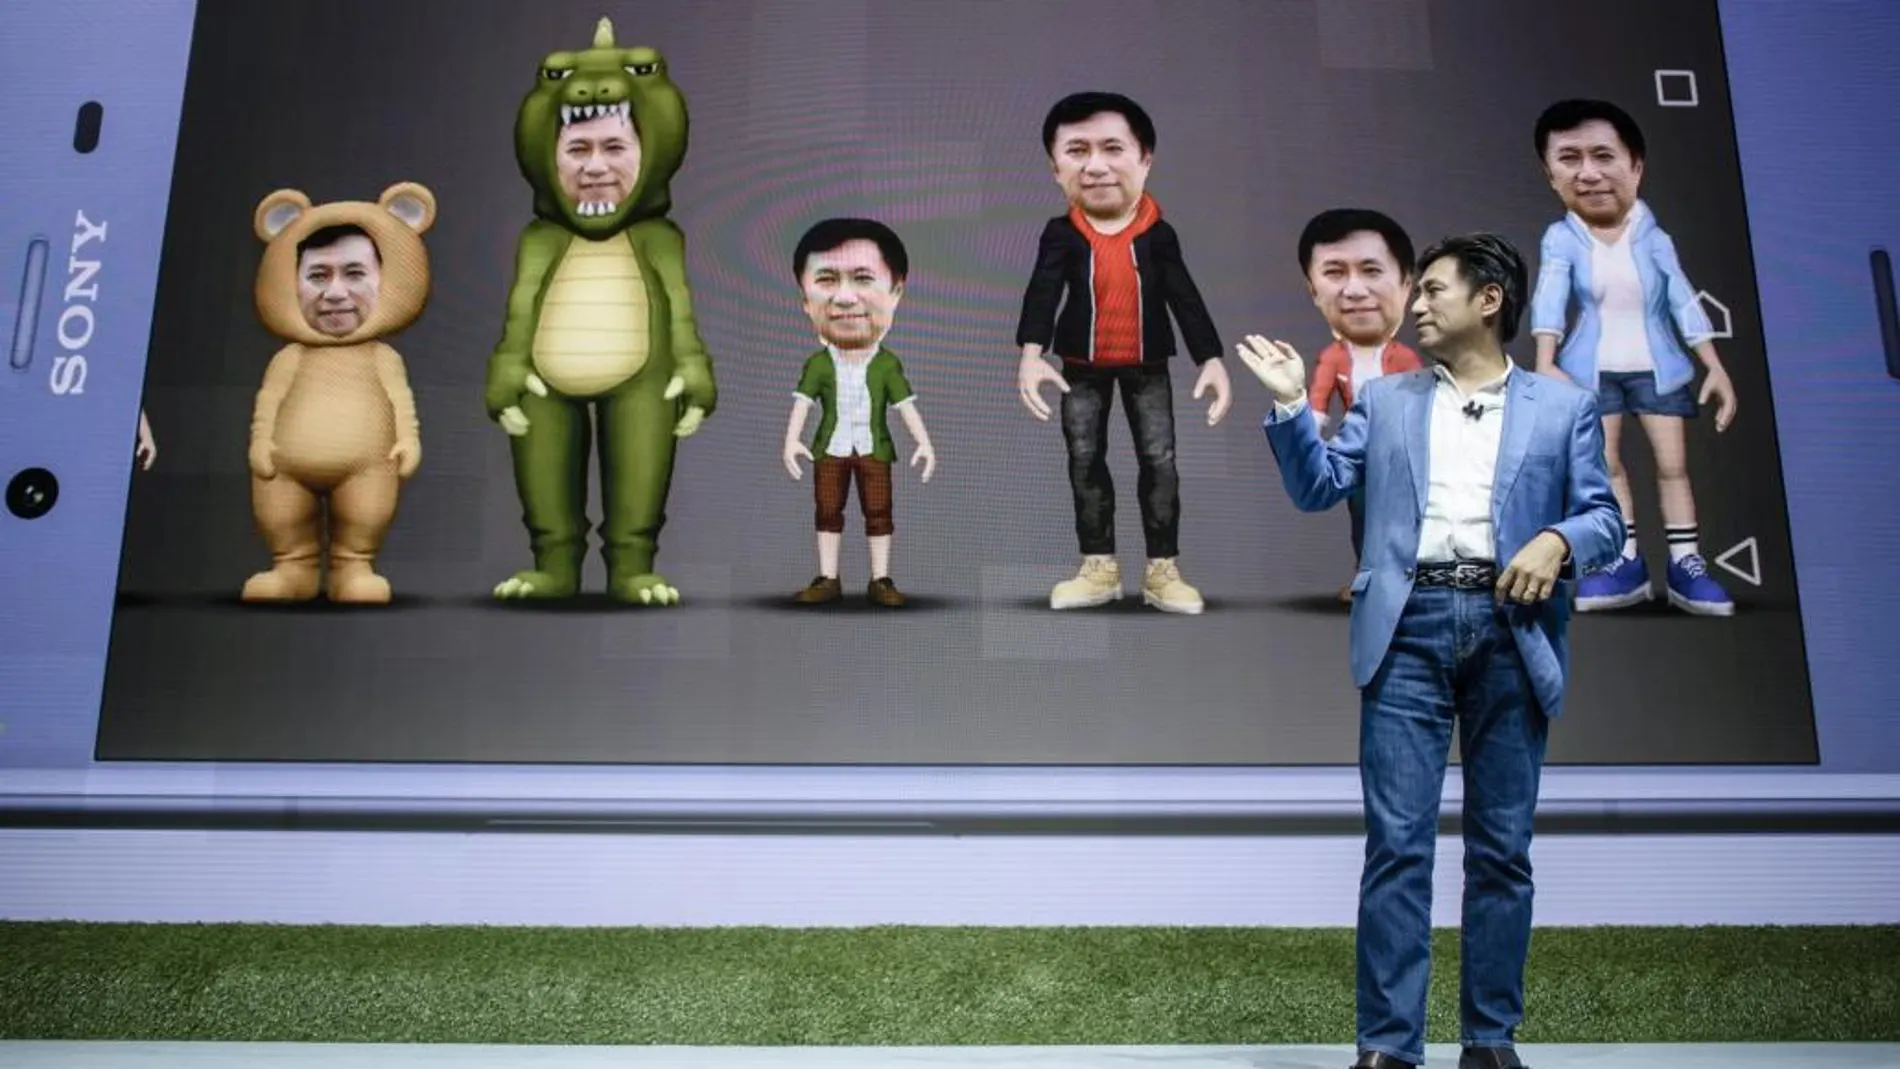 El vicepresidente ejecutivo de Ventas globales de Sony Mobile, Hideyuki Furumi, presenta algunos avatares disponibles en el nuevo Sony Experia XZ1 durante la IFA